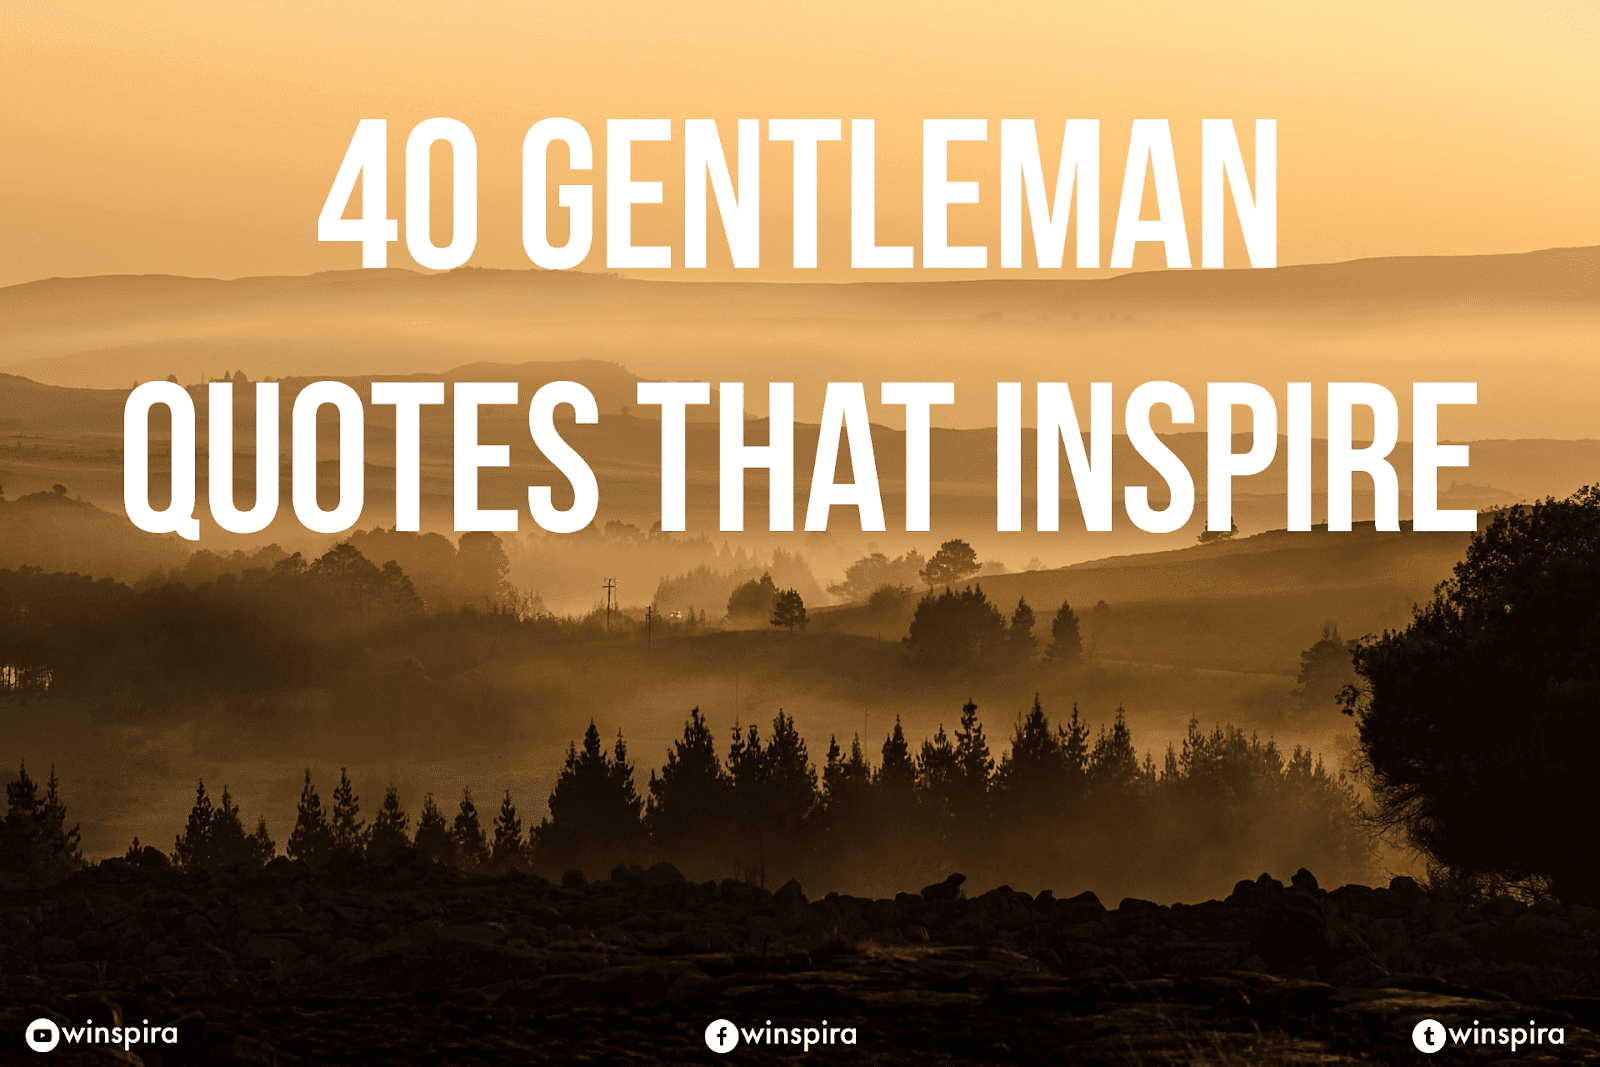 40 Gentleman Quotes That Inspire